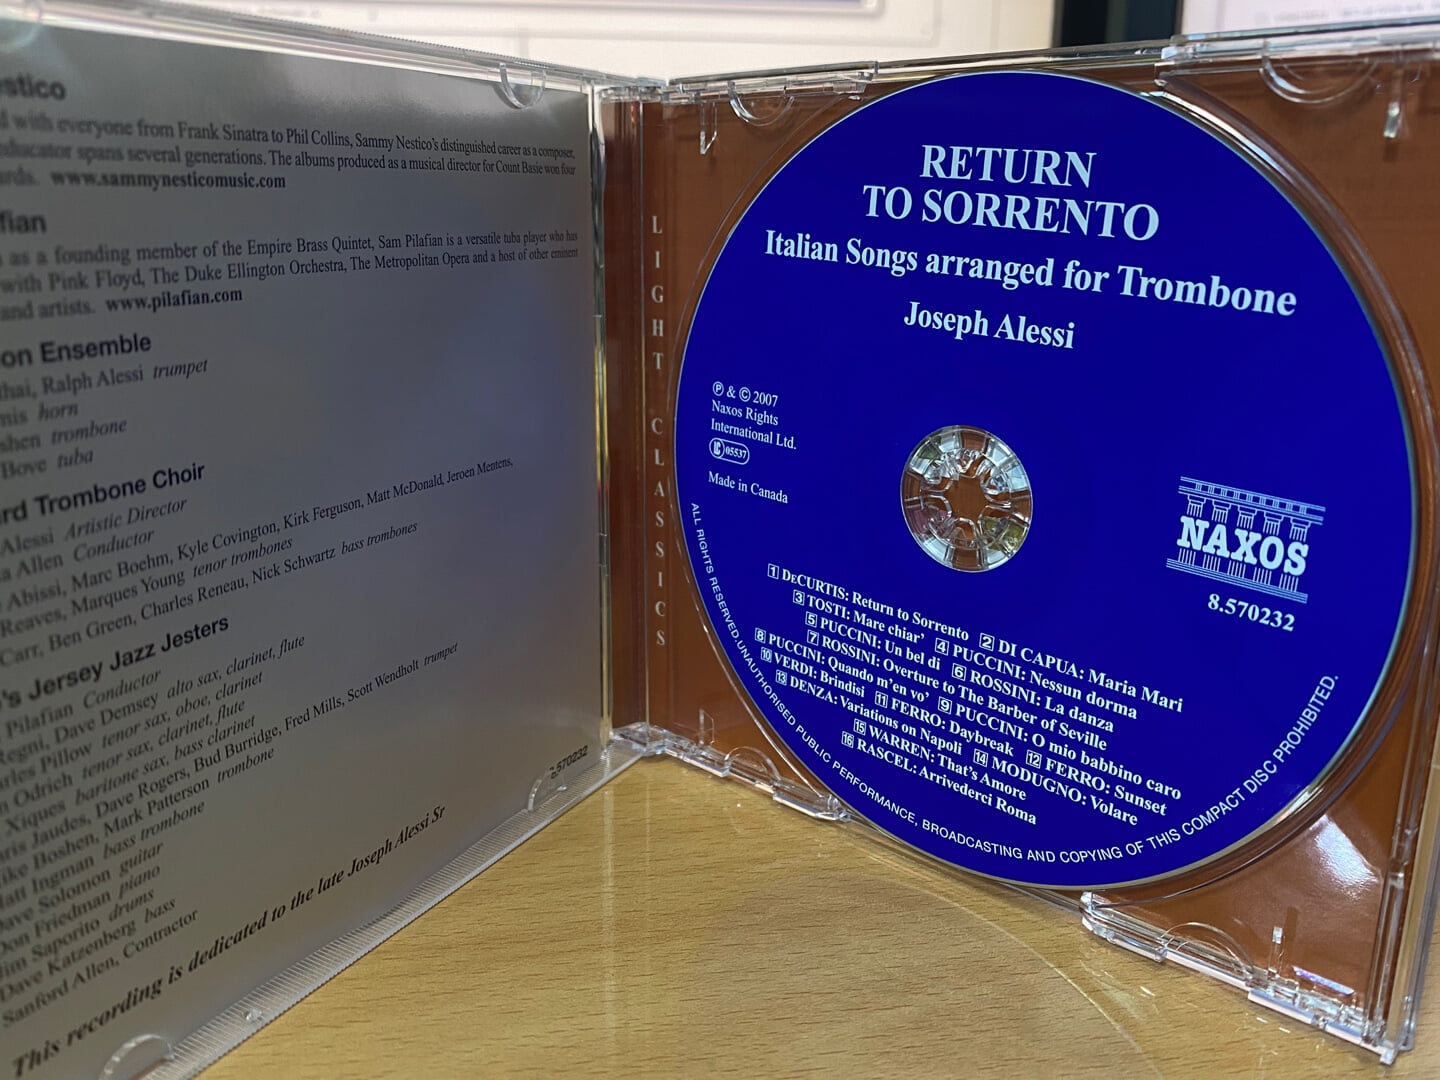 조셉 아레시 - Joseph Alessi - Return To Sorrento Italian Songs Arranged For Trombone [캐나다발매]